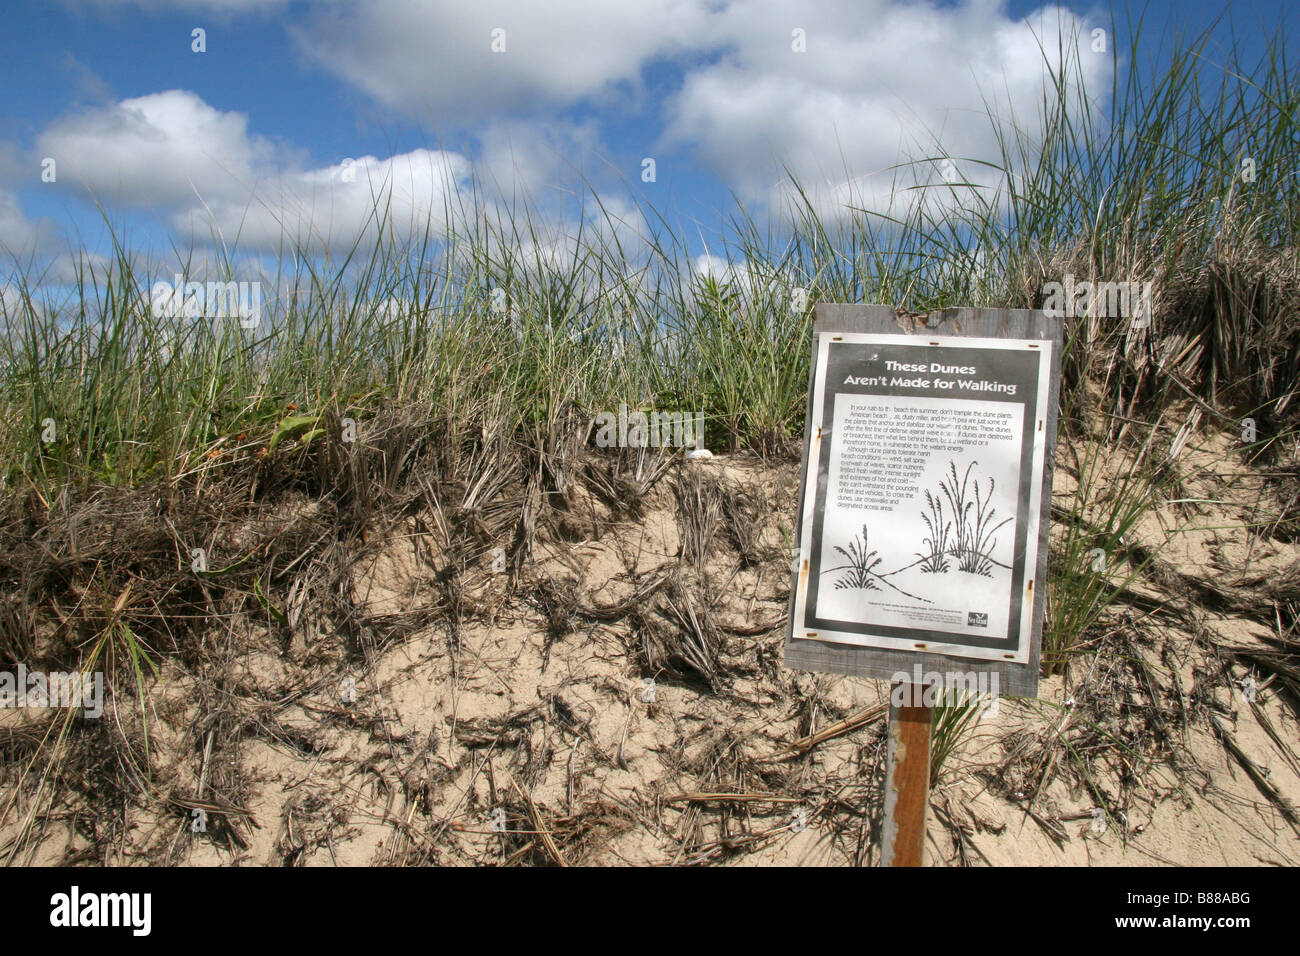 "Diese Dünen nicht sind Made for Walking" Zeichen, Cape Code National Seashore, Falmouth, Massachusetts. Stockfoto